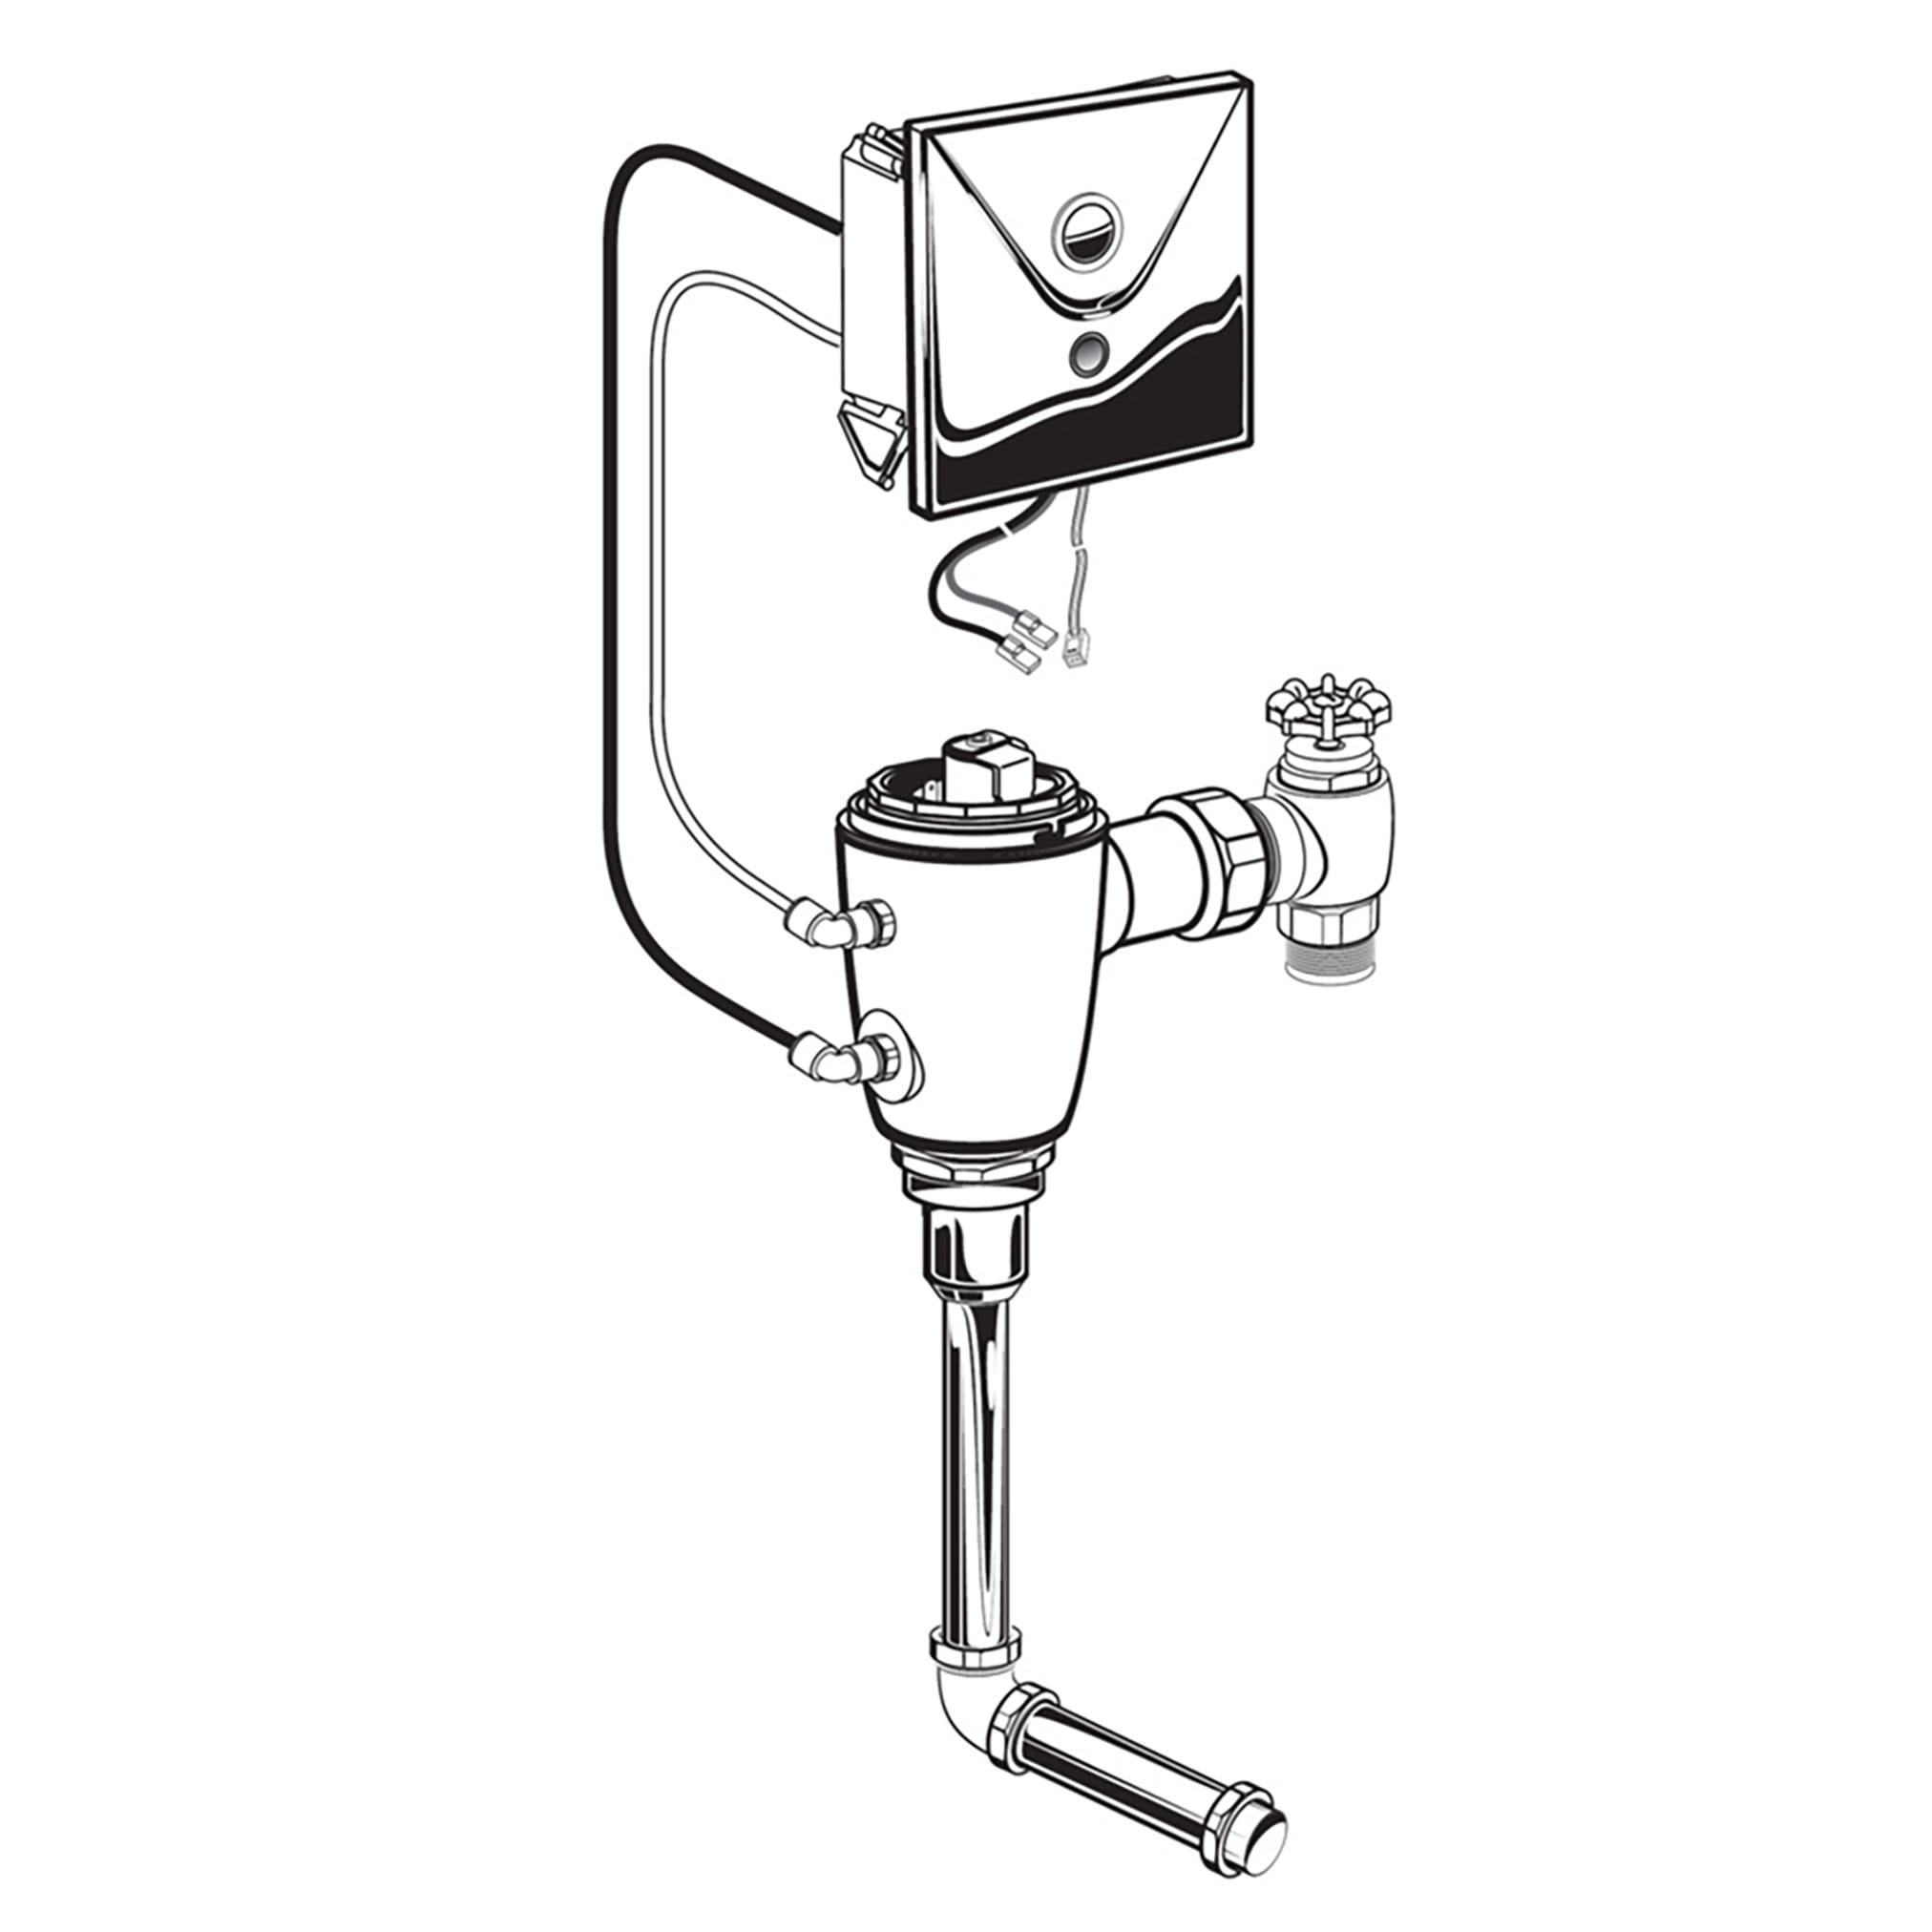 Ultima™ Selectronic - robinet de chasse dissimulé pour urinoir, modèle de base, de type à piston, 0,5 gpc/1,9 lpc